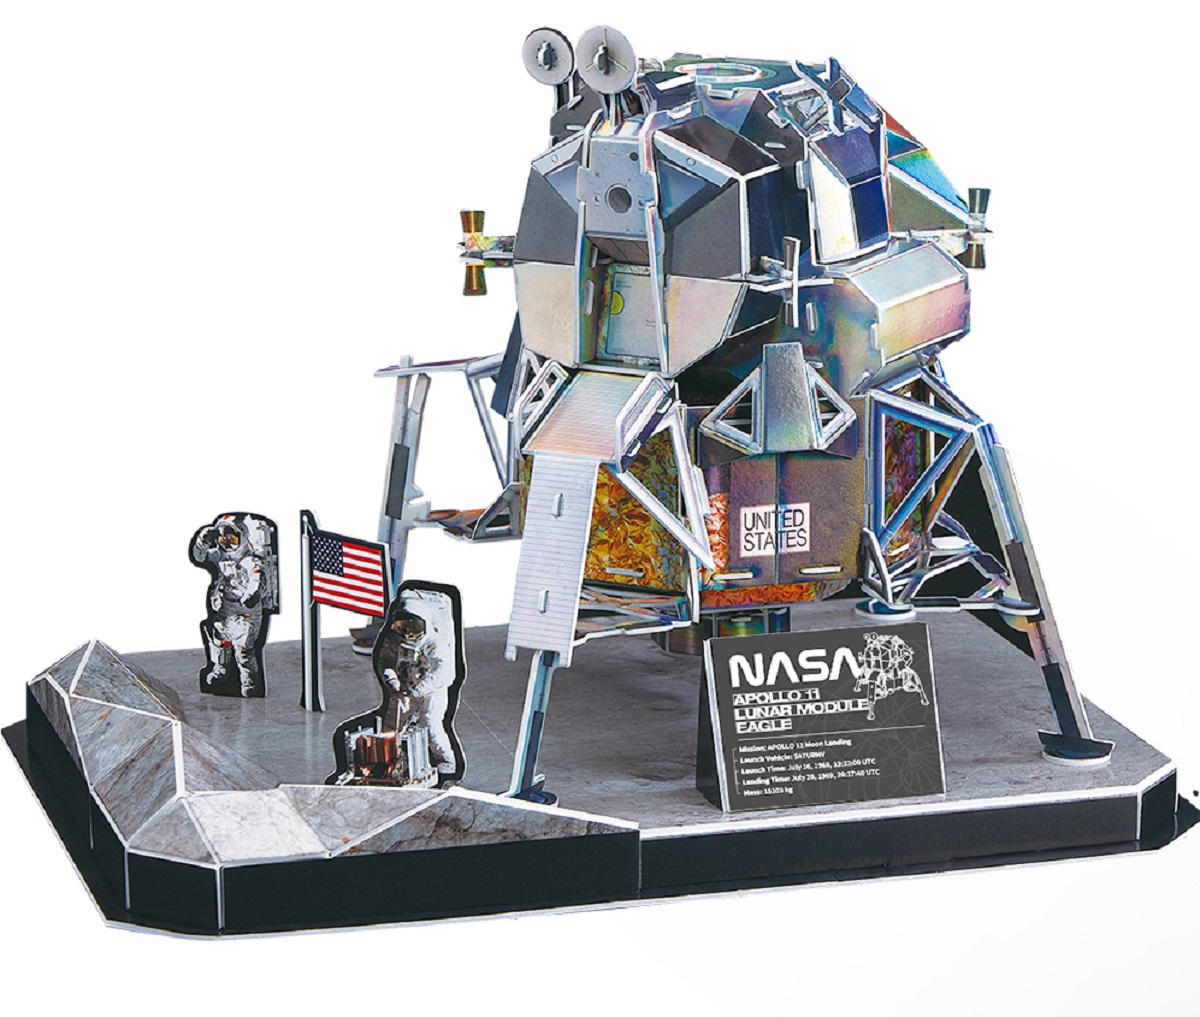 Puzzle 3D NASA: Modulul lunar Apollo 11